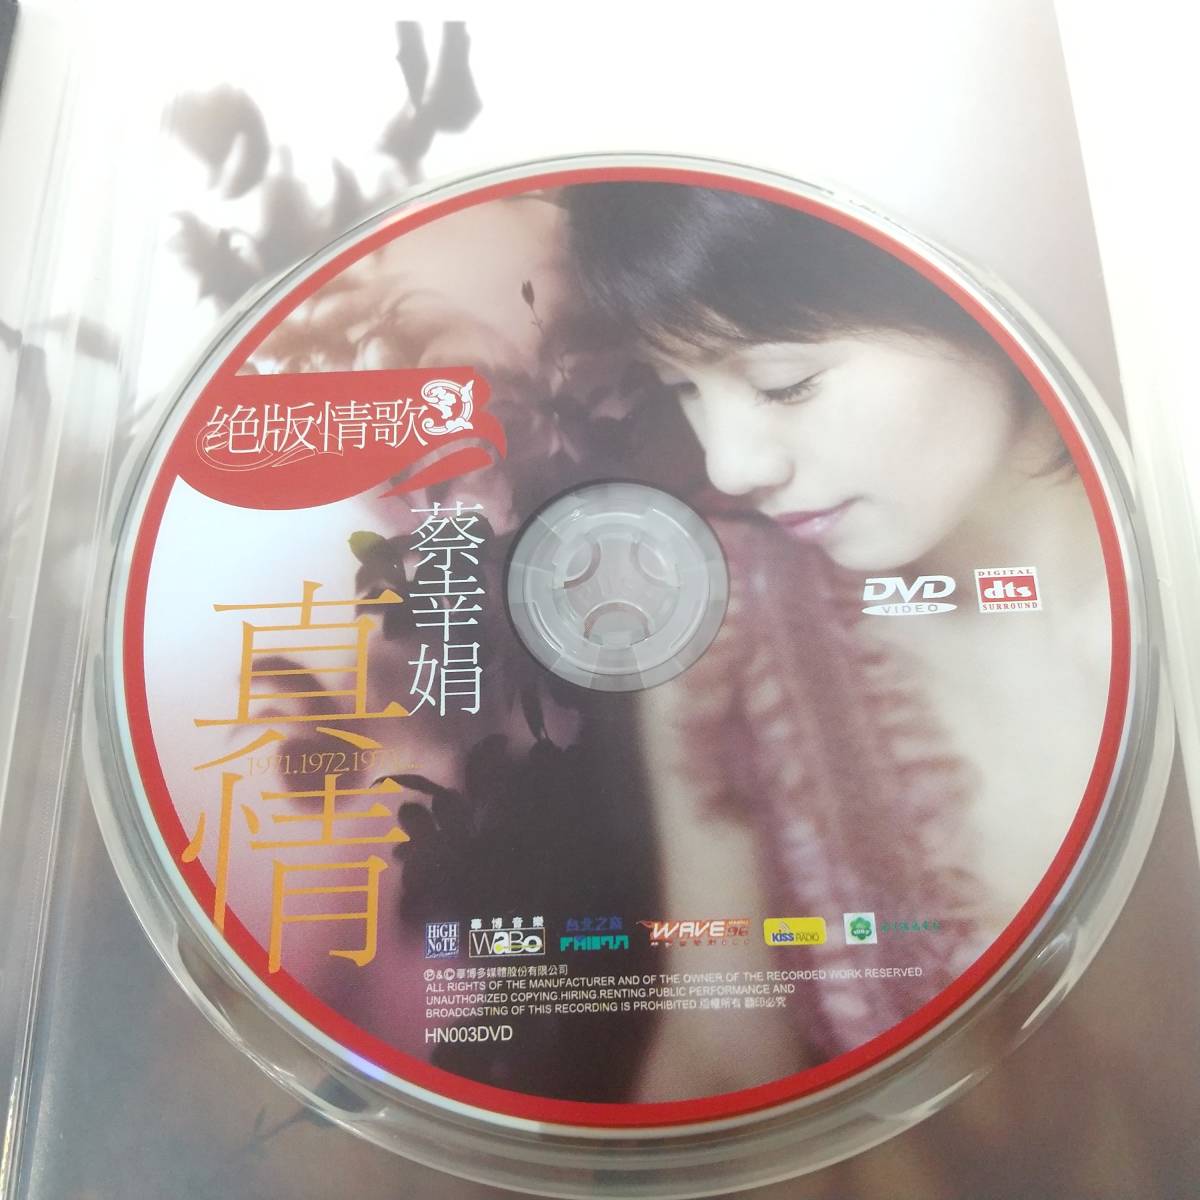 1060【DVD】蔡幸娟(ツァイ・シンチュアン)【 絶版情歌 真情 】 台湾版_画像4